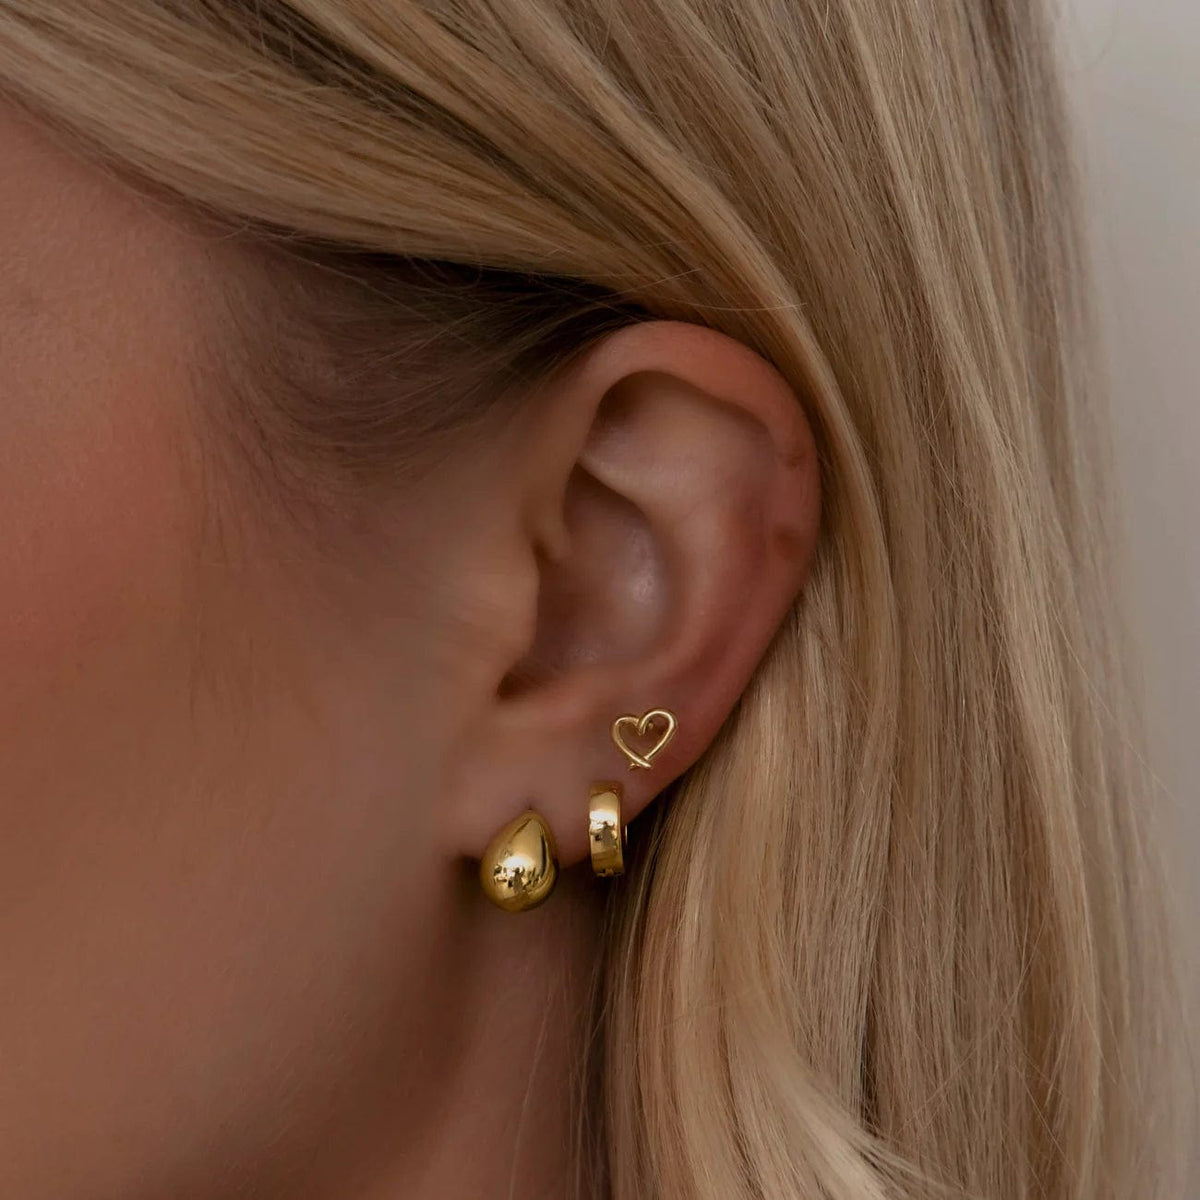 BohoMoon Stainless Steel Cute Huggie Hoop Earrings Gold